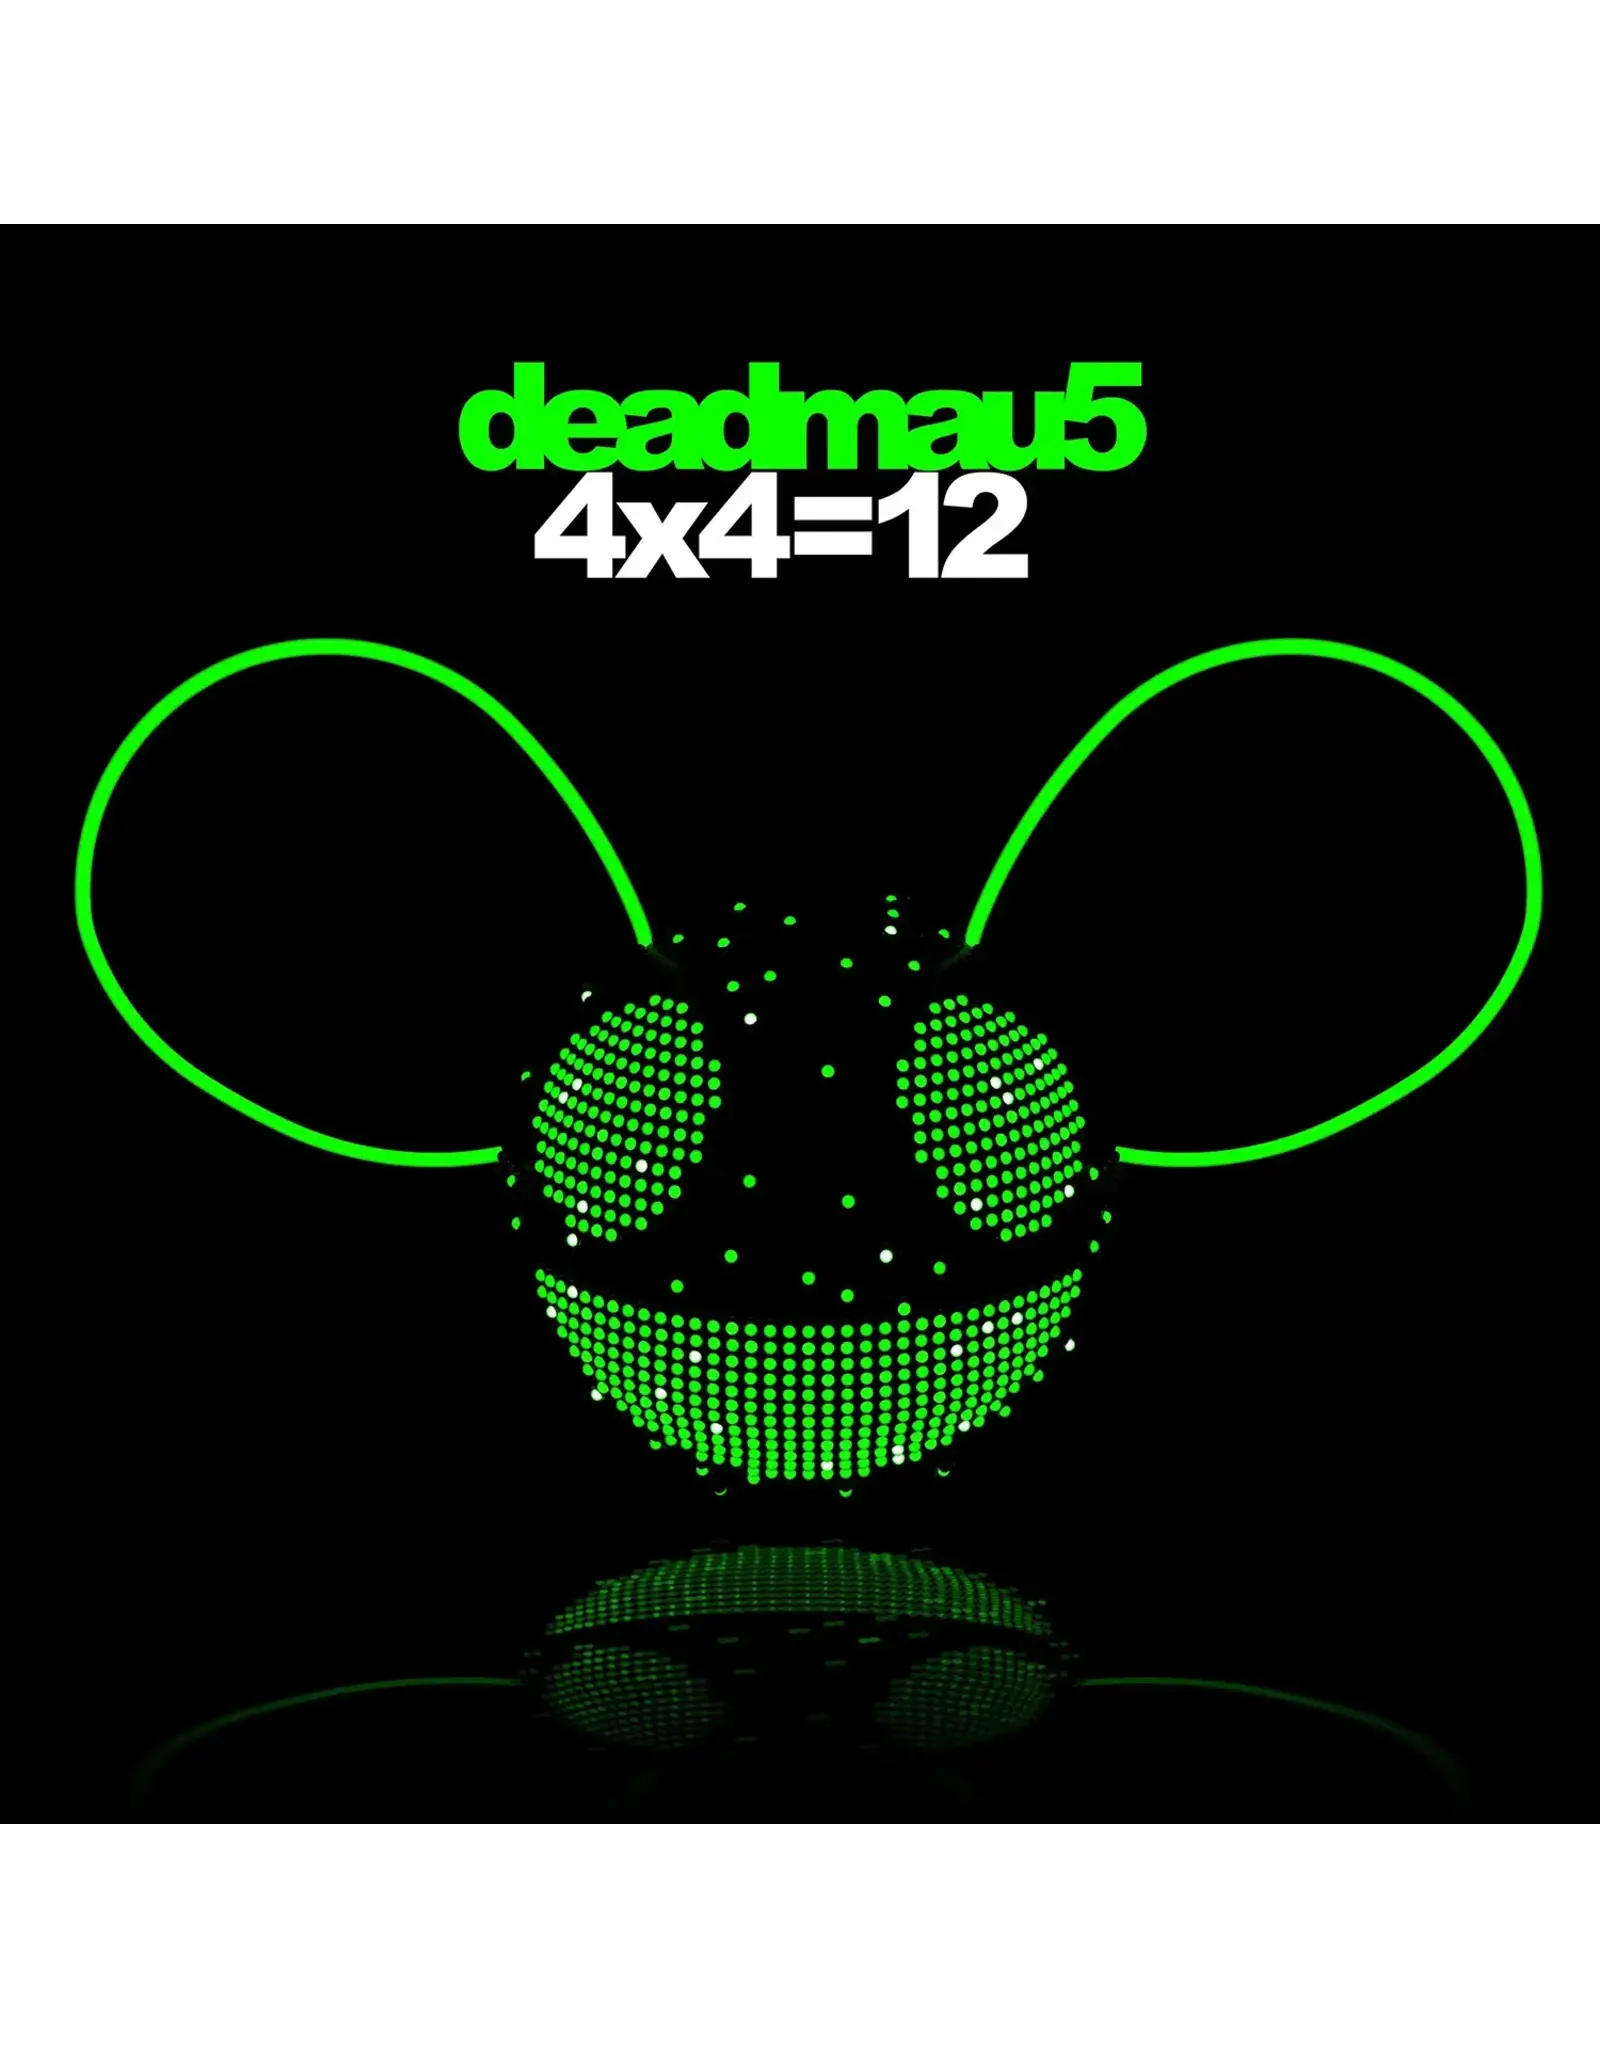 Deadmau5 - 4x4=12 (Transparent Green Vinyl)